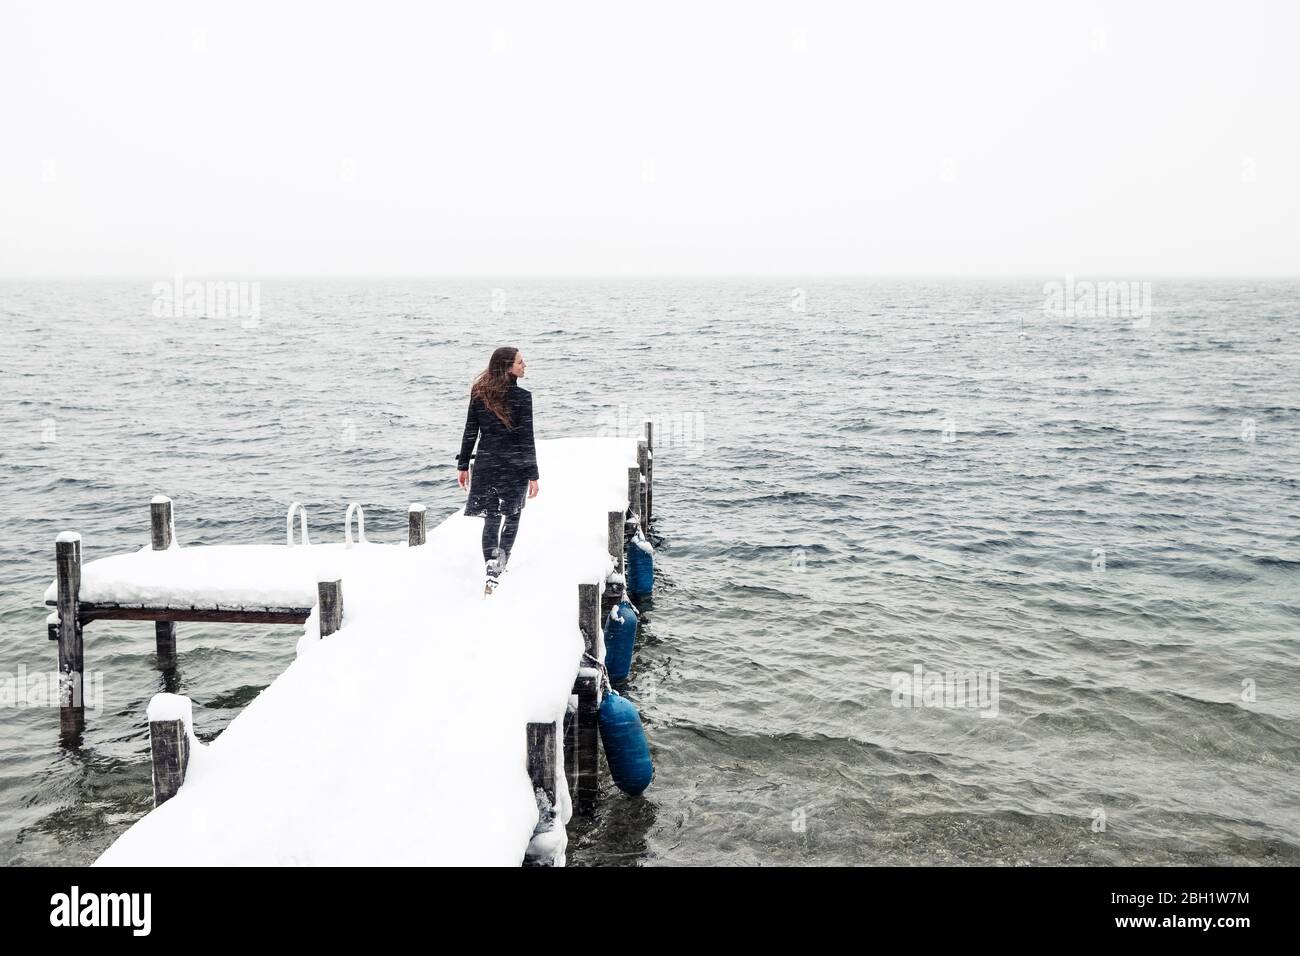 Vue arrière de la jeune femme marchant sur une jetée enneigée au lac Starnberg, Allemagne Banque D'Images